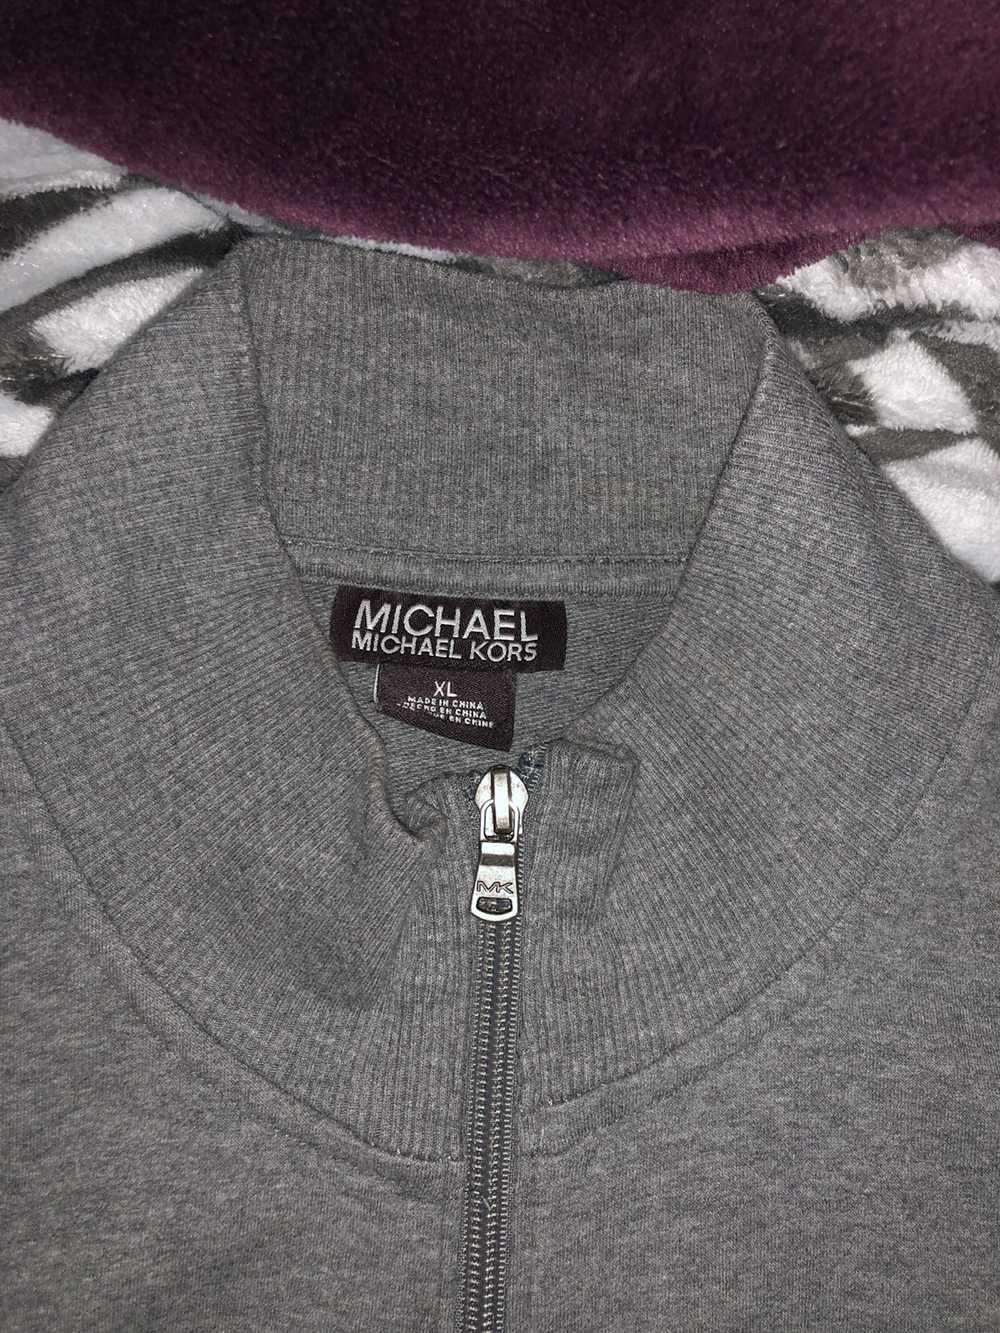 Michael Kors Michael Kors Fleece Jacket - image 2